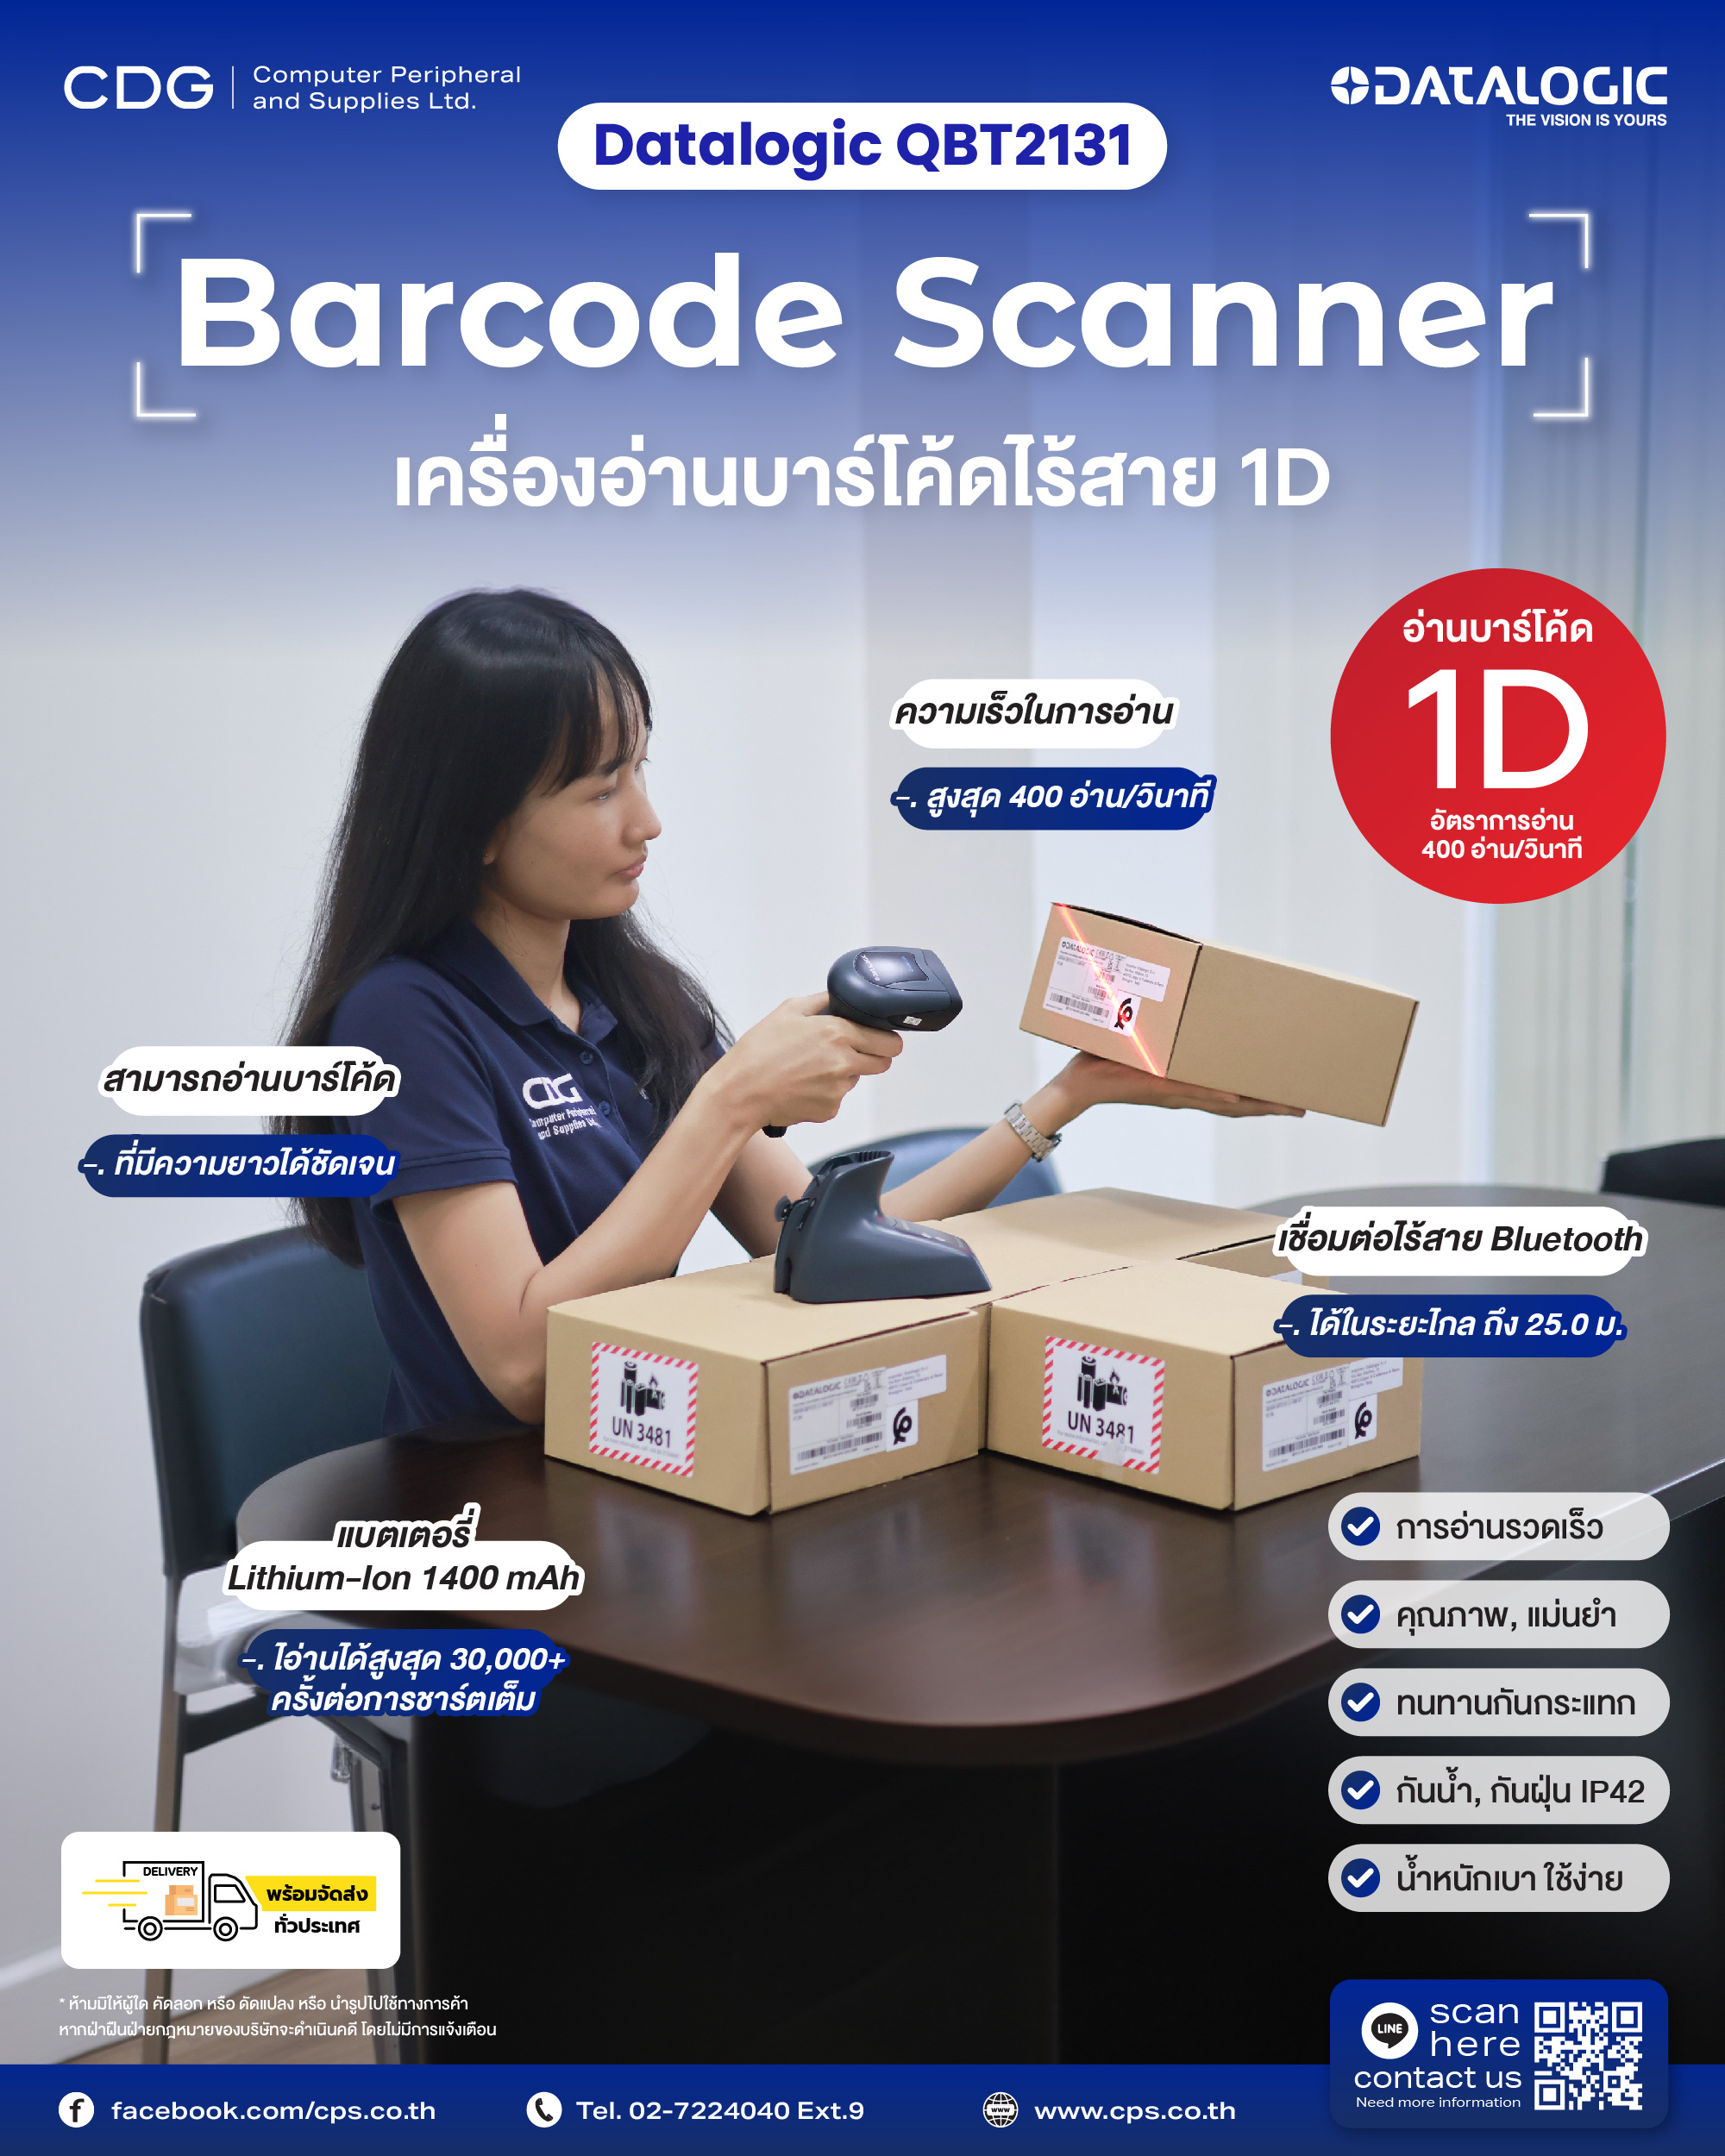 Barcode Scanner Datalogic QuickScan QBT2131